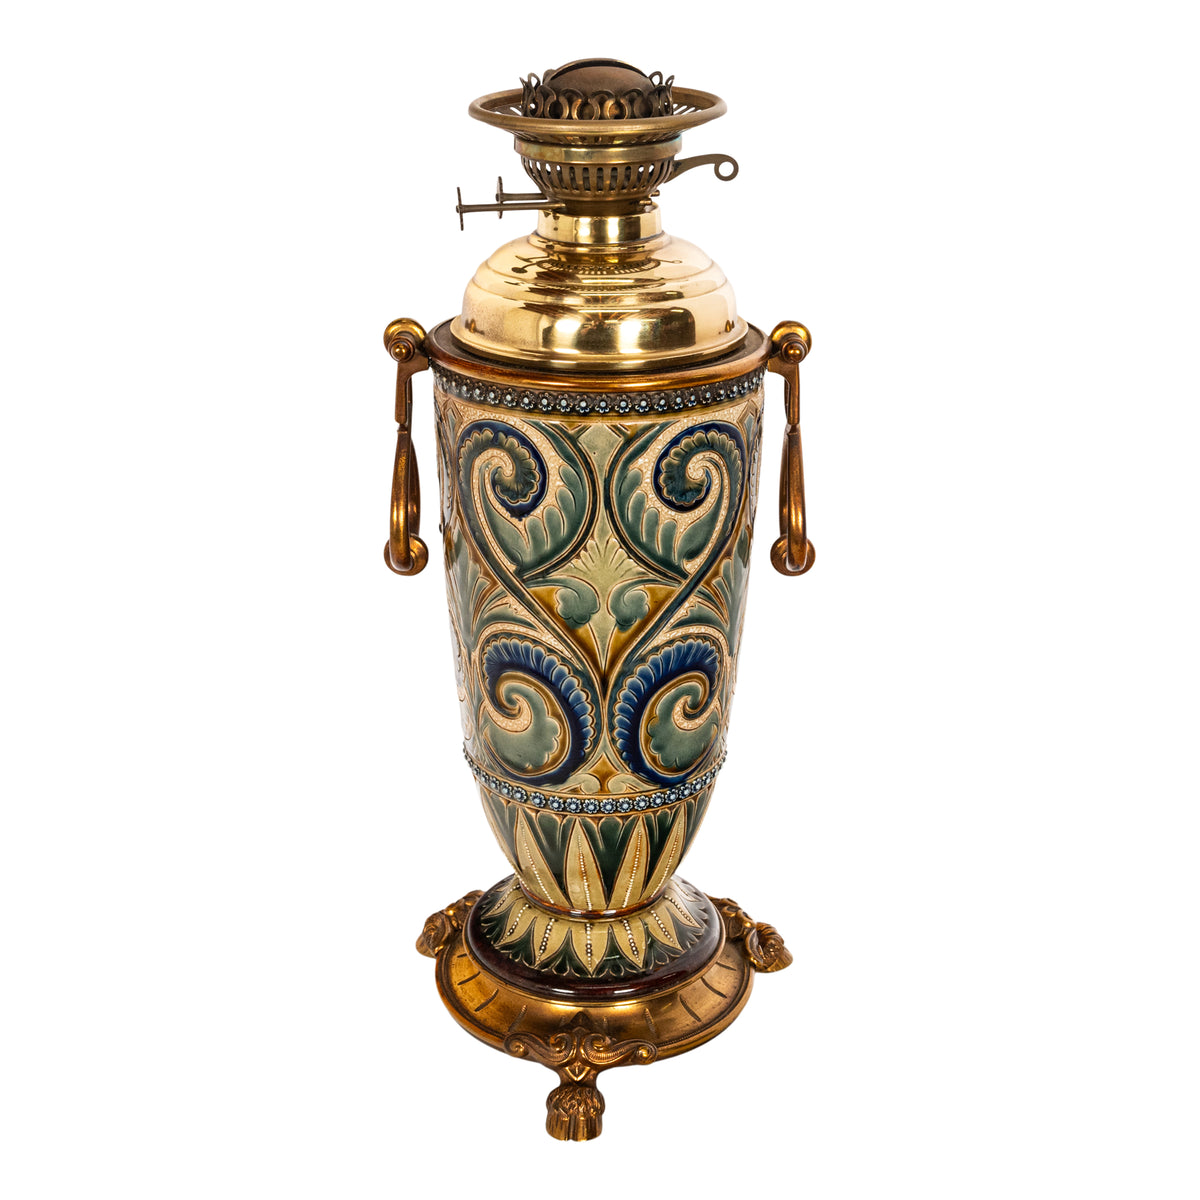 Antique Art Pottery Stoneware Dalton Lambeth Oil Lamp Signed Edith Lupton 1884